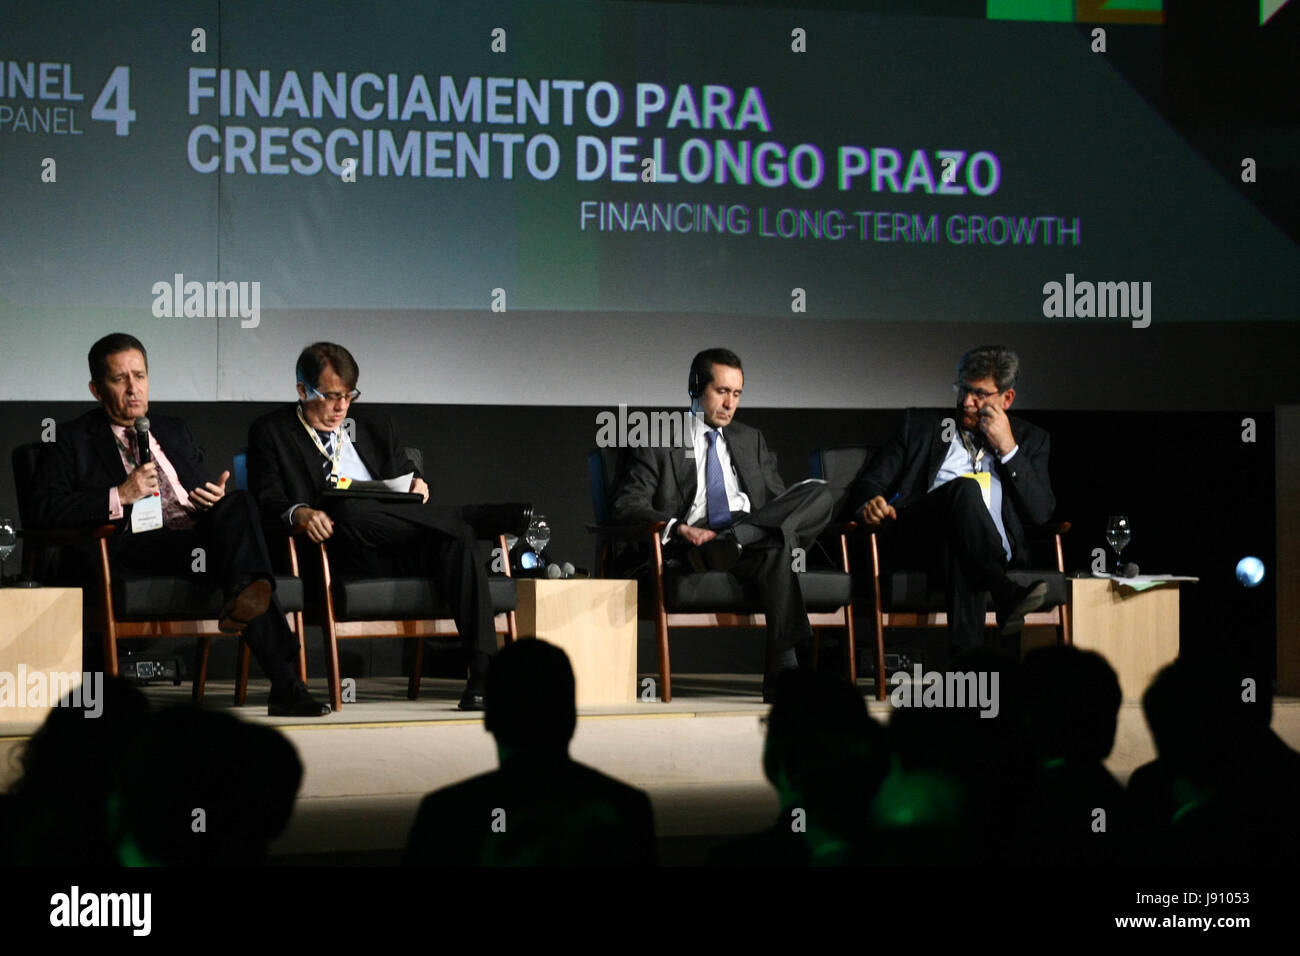 CEO del Banco Citi América Latina Jane Fraser, aborda la reunión anual de  la Junta de Directores del Banco Nacional de México conocido como banco  Banamex en el Hotel Hyatt de Marzo